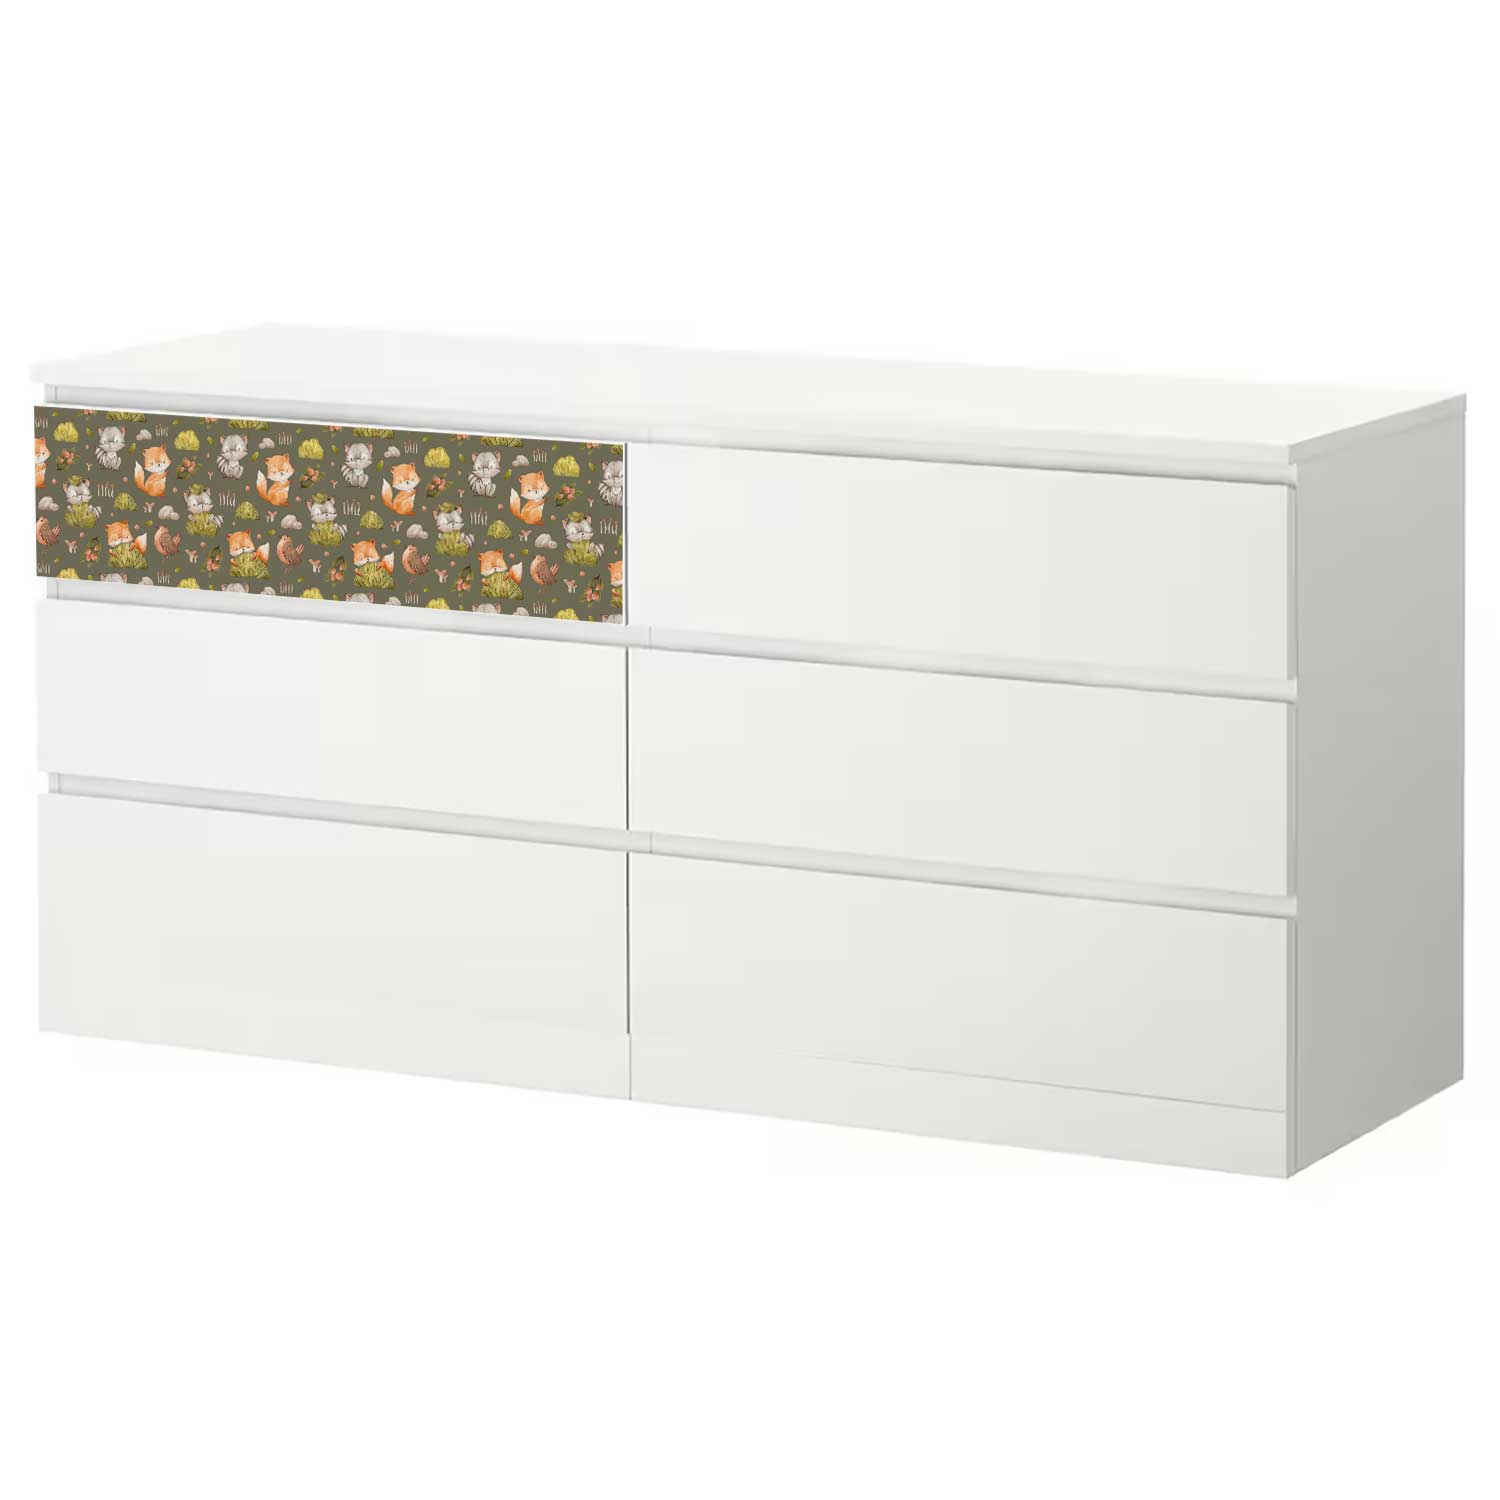 Möbelfolie Kinder für IKEA MALM Kommode 6-Schubladen 160x78 cm 'Waldtiere'